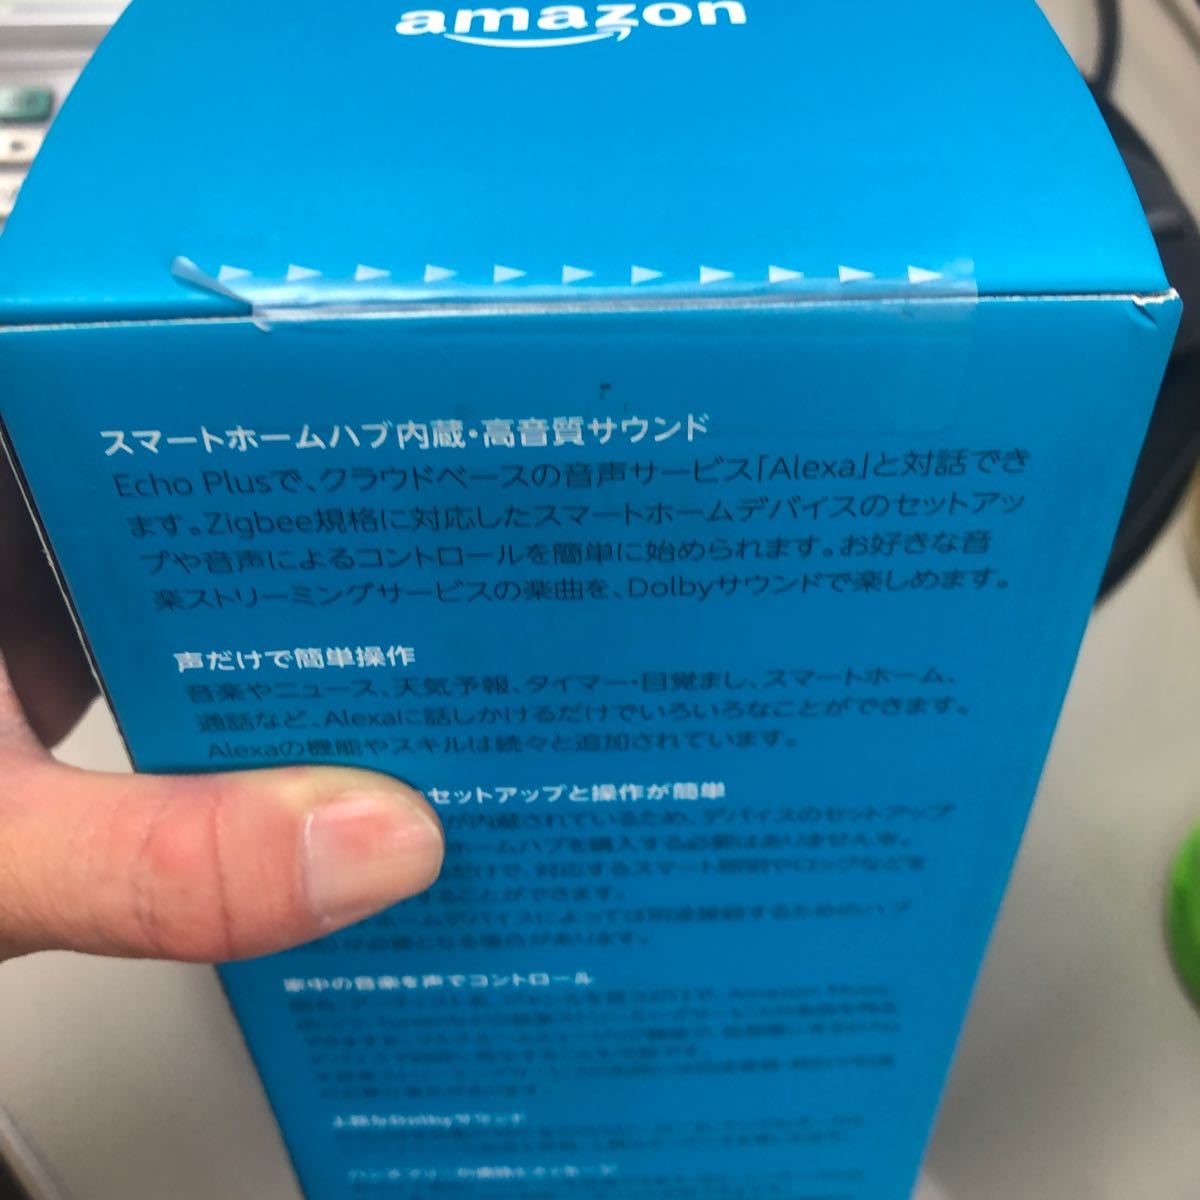 amazon Echo Plus (エコープラス) 第2世代 - スマートスピーカー with Alexa、チャコール